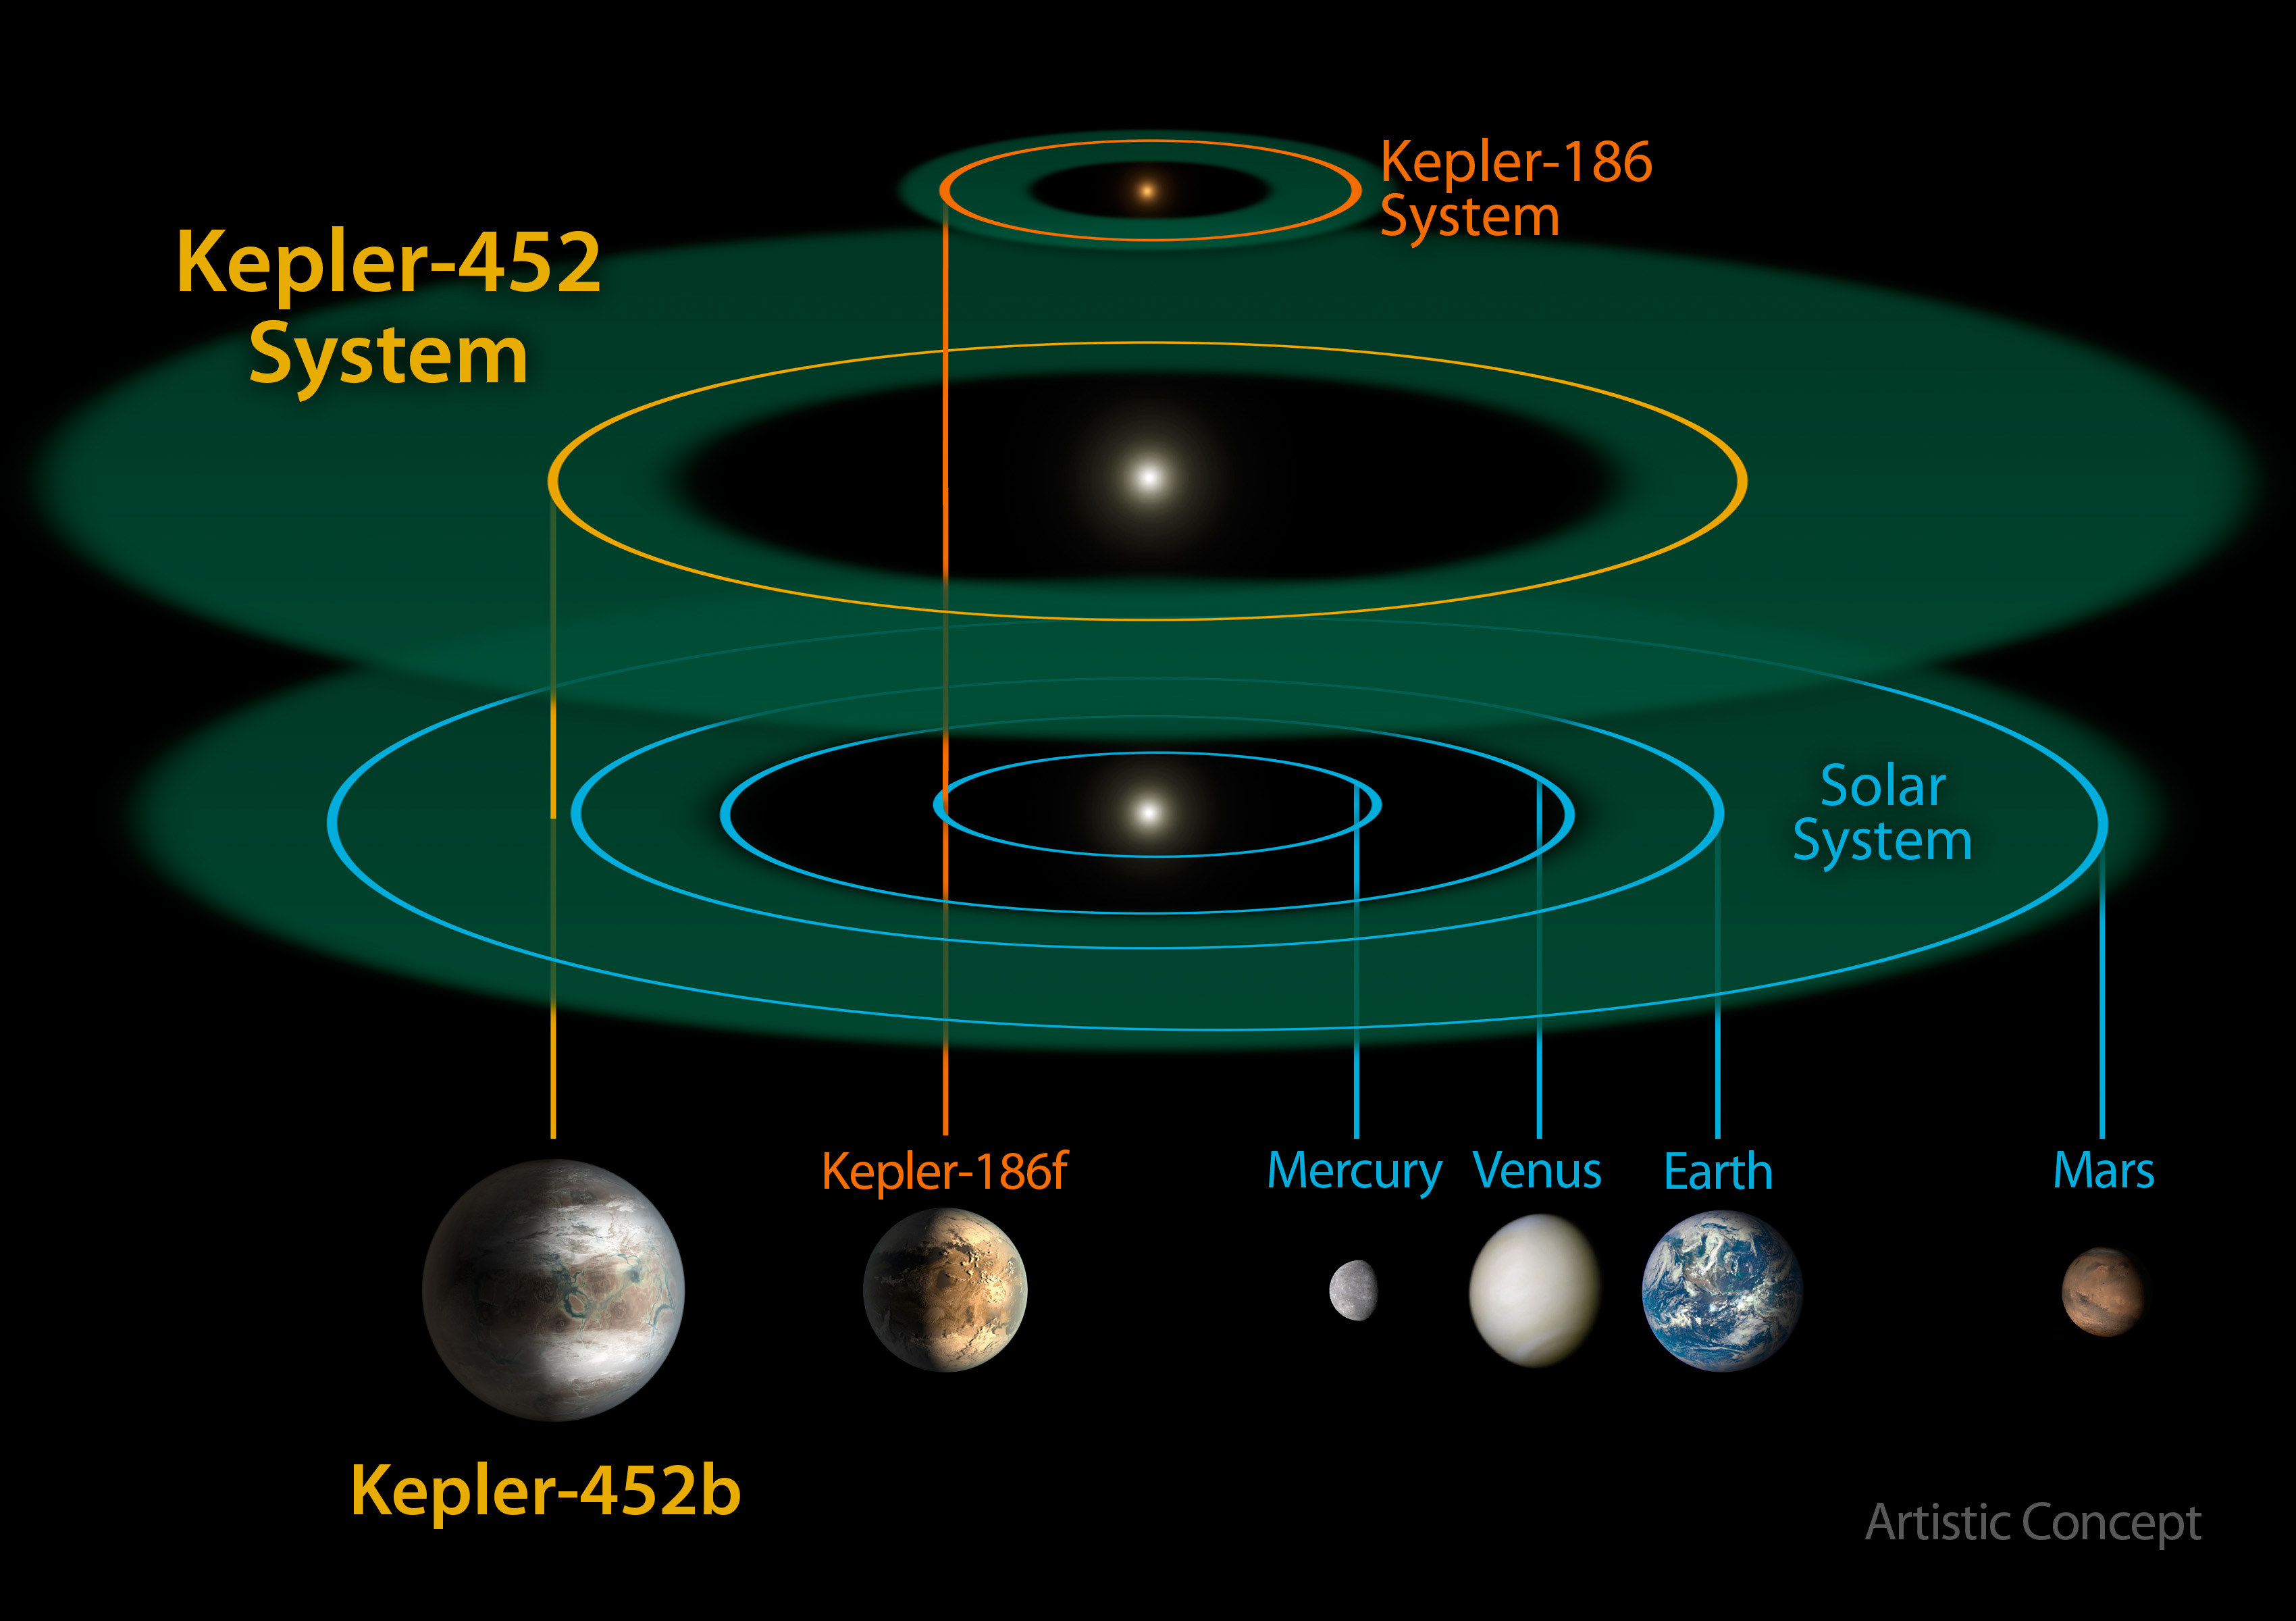 Esta es en escala el sistema de Kepler-452b comparado con  el sistema Kepler-186 system  y el sistema solar Creditos: NASA/JPL-CalTech/R. Hurt